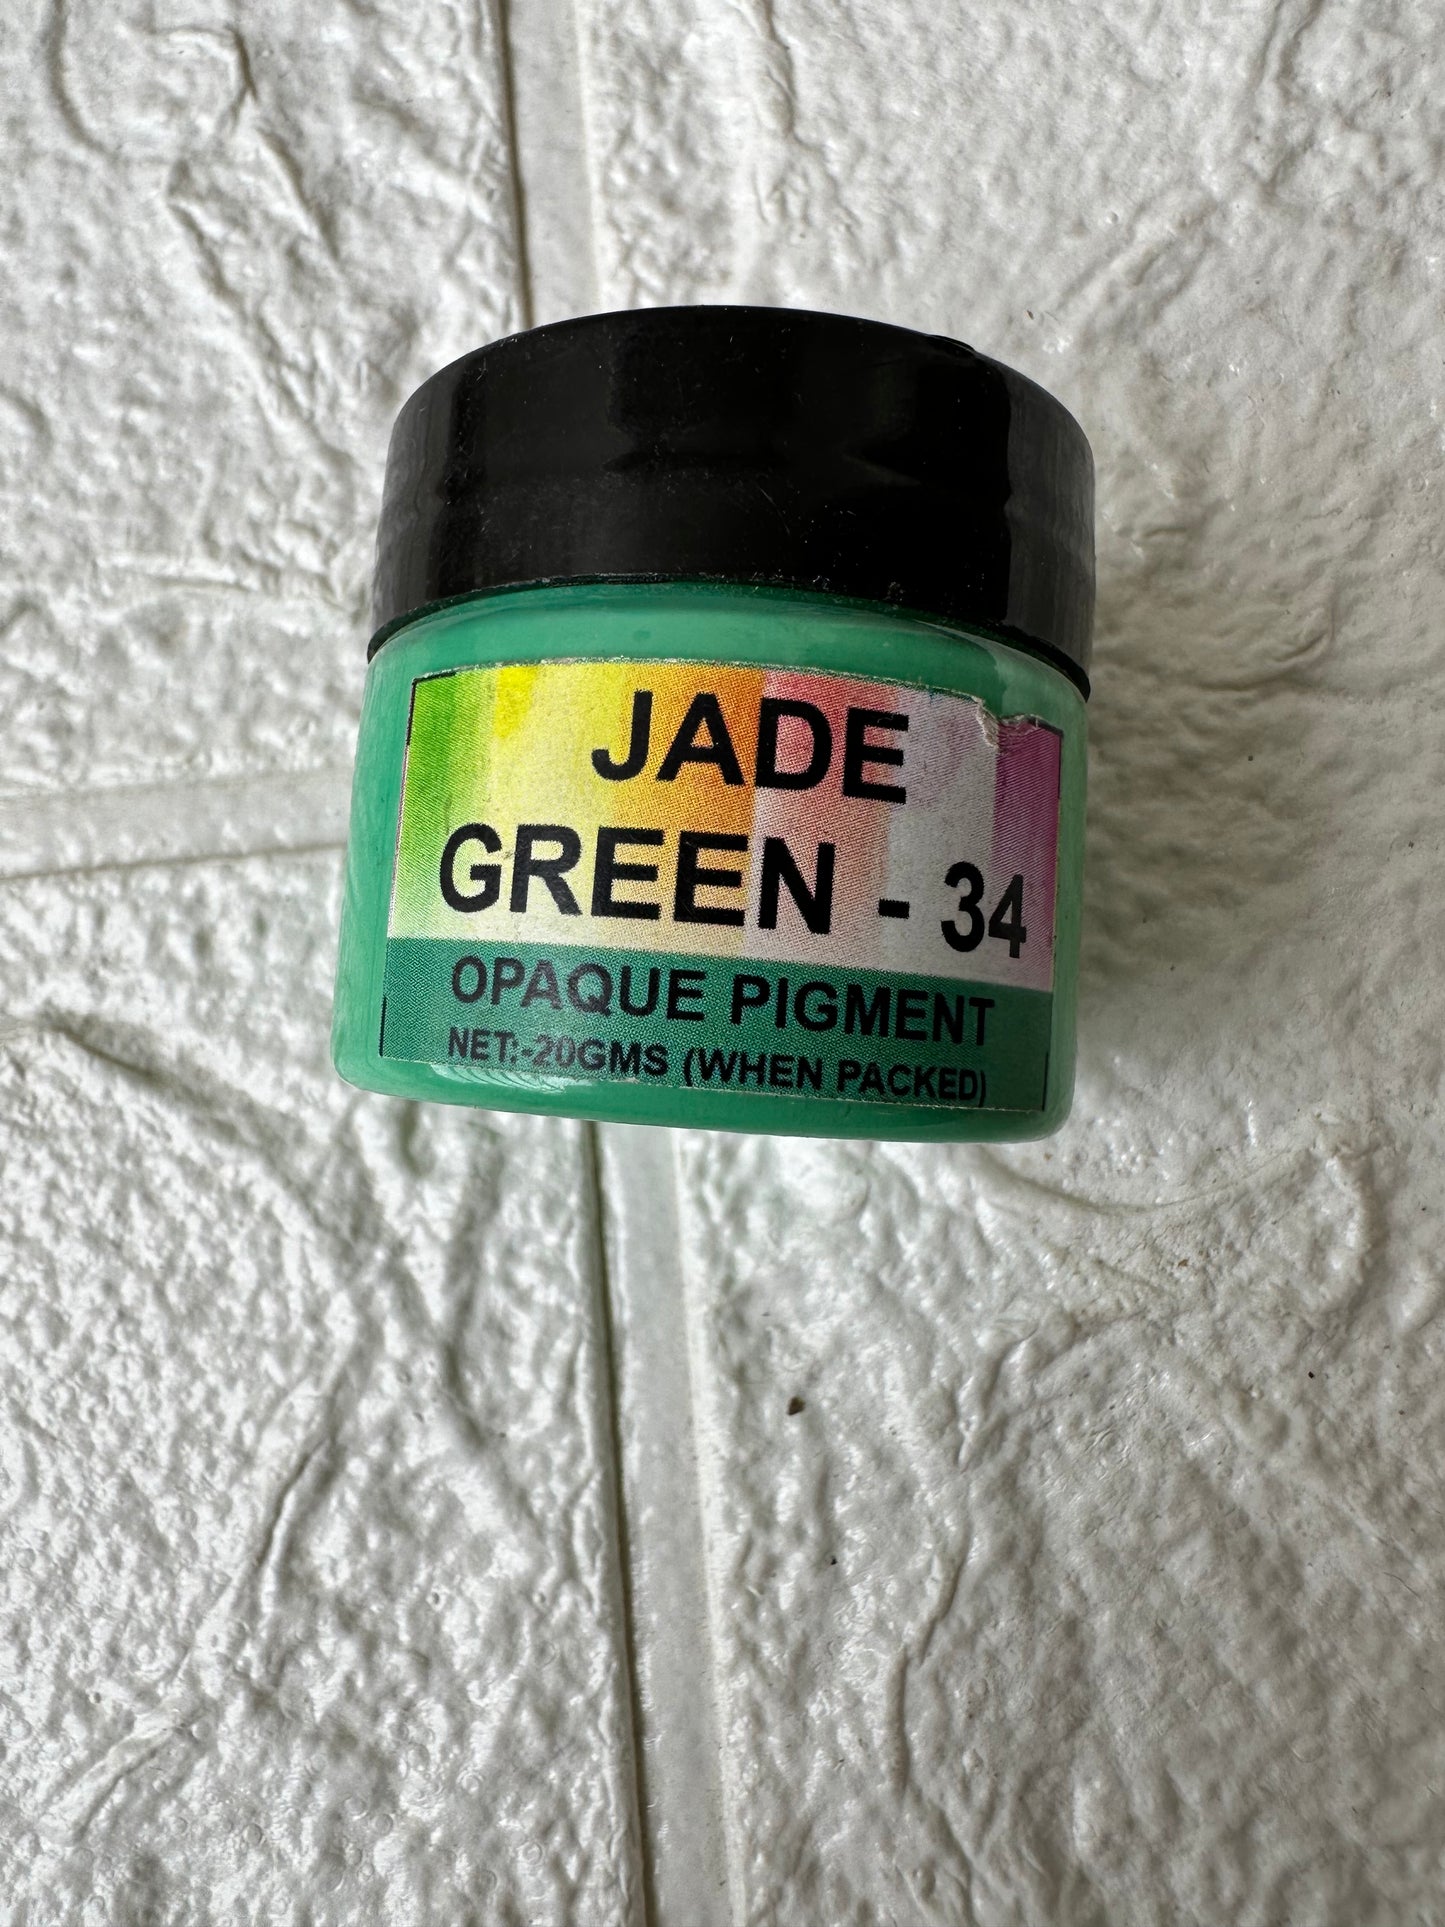 Jade green opaque pigment